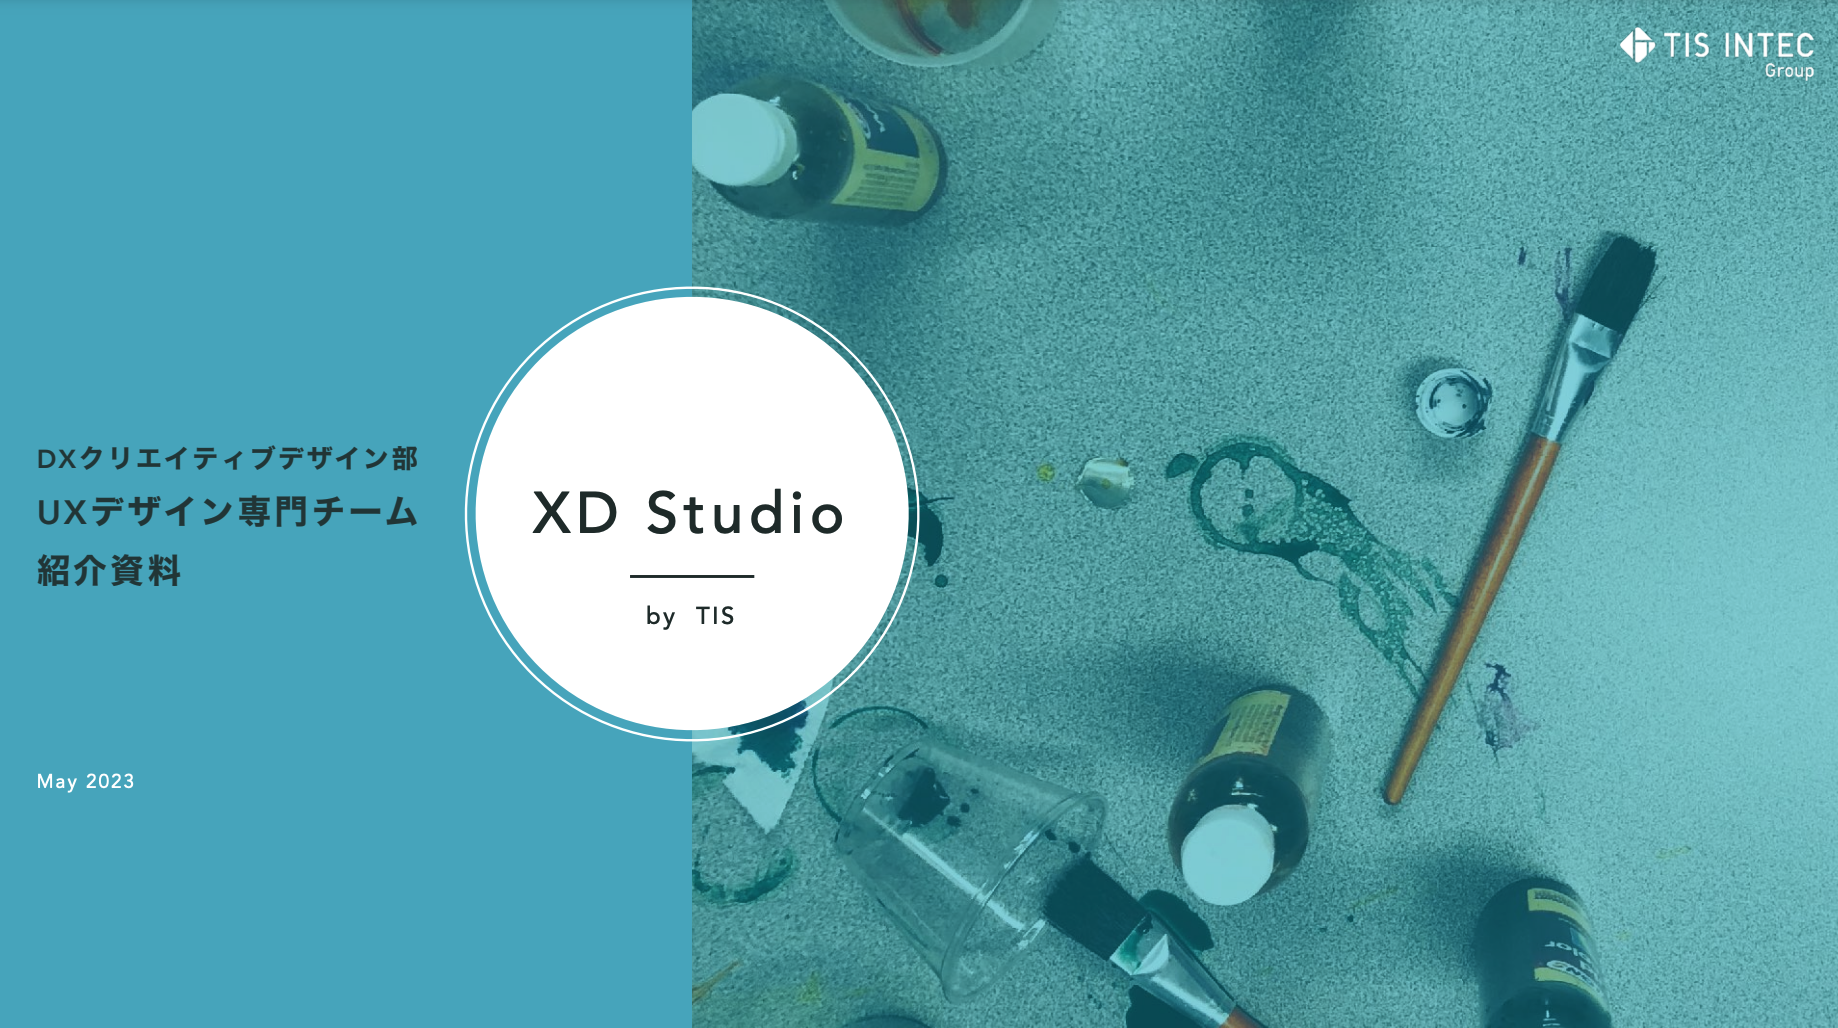 XD Studio紹介資料